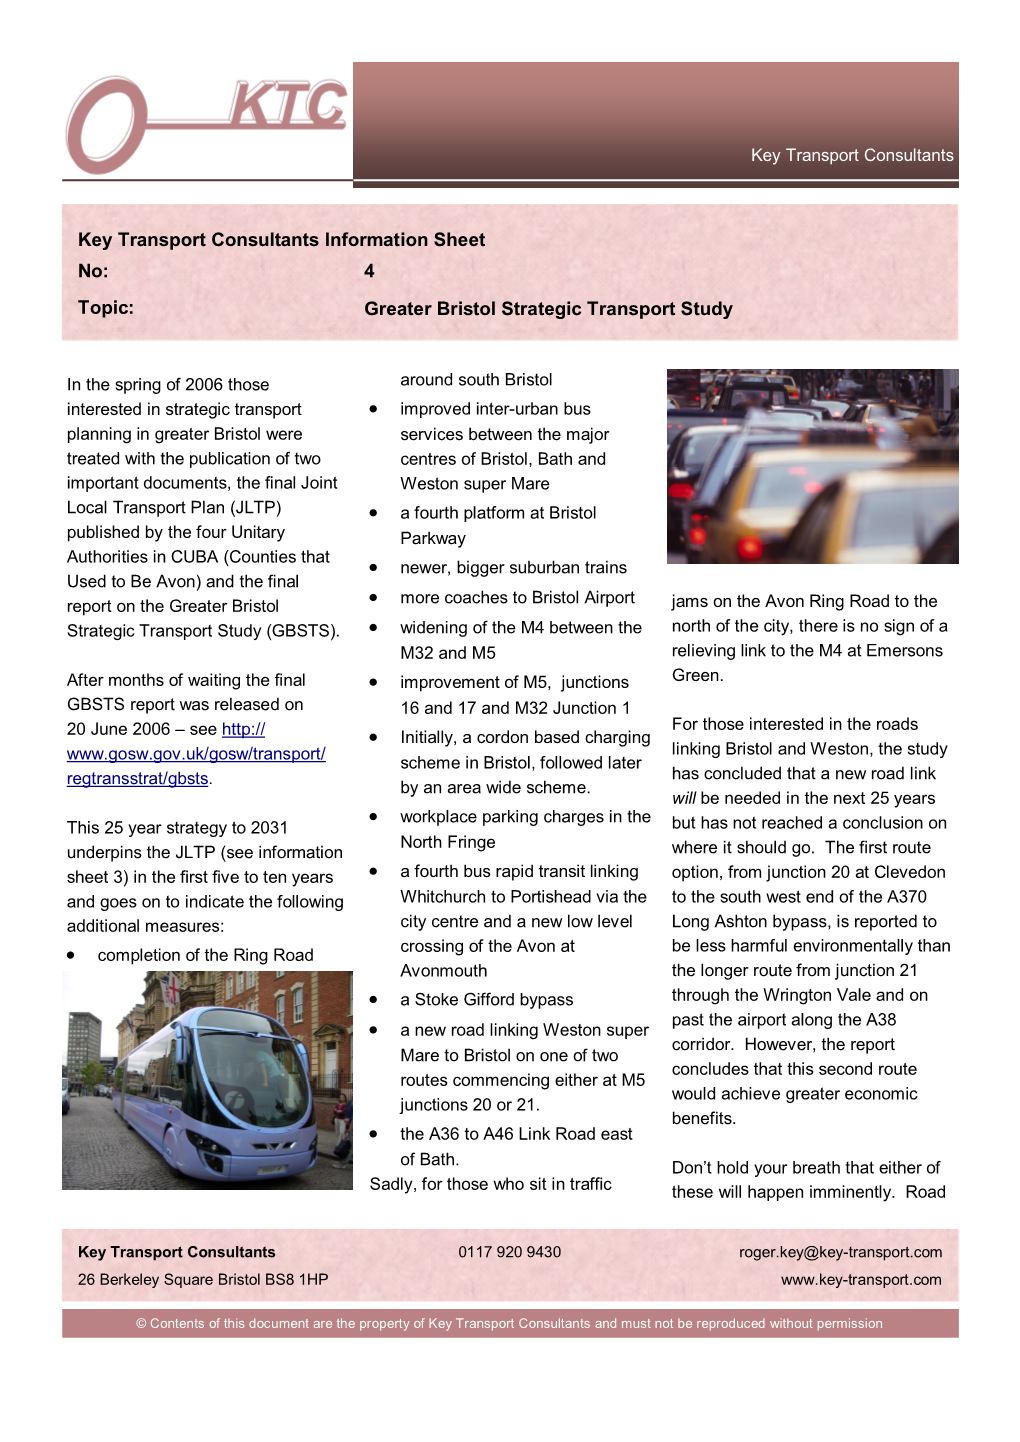 Greater Bristol Strategic Transport Study Key Transport Consultants